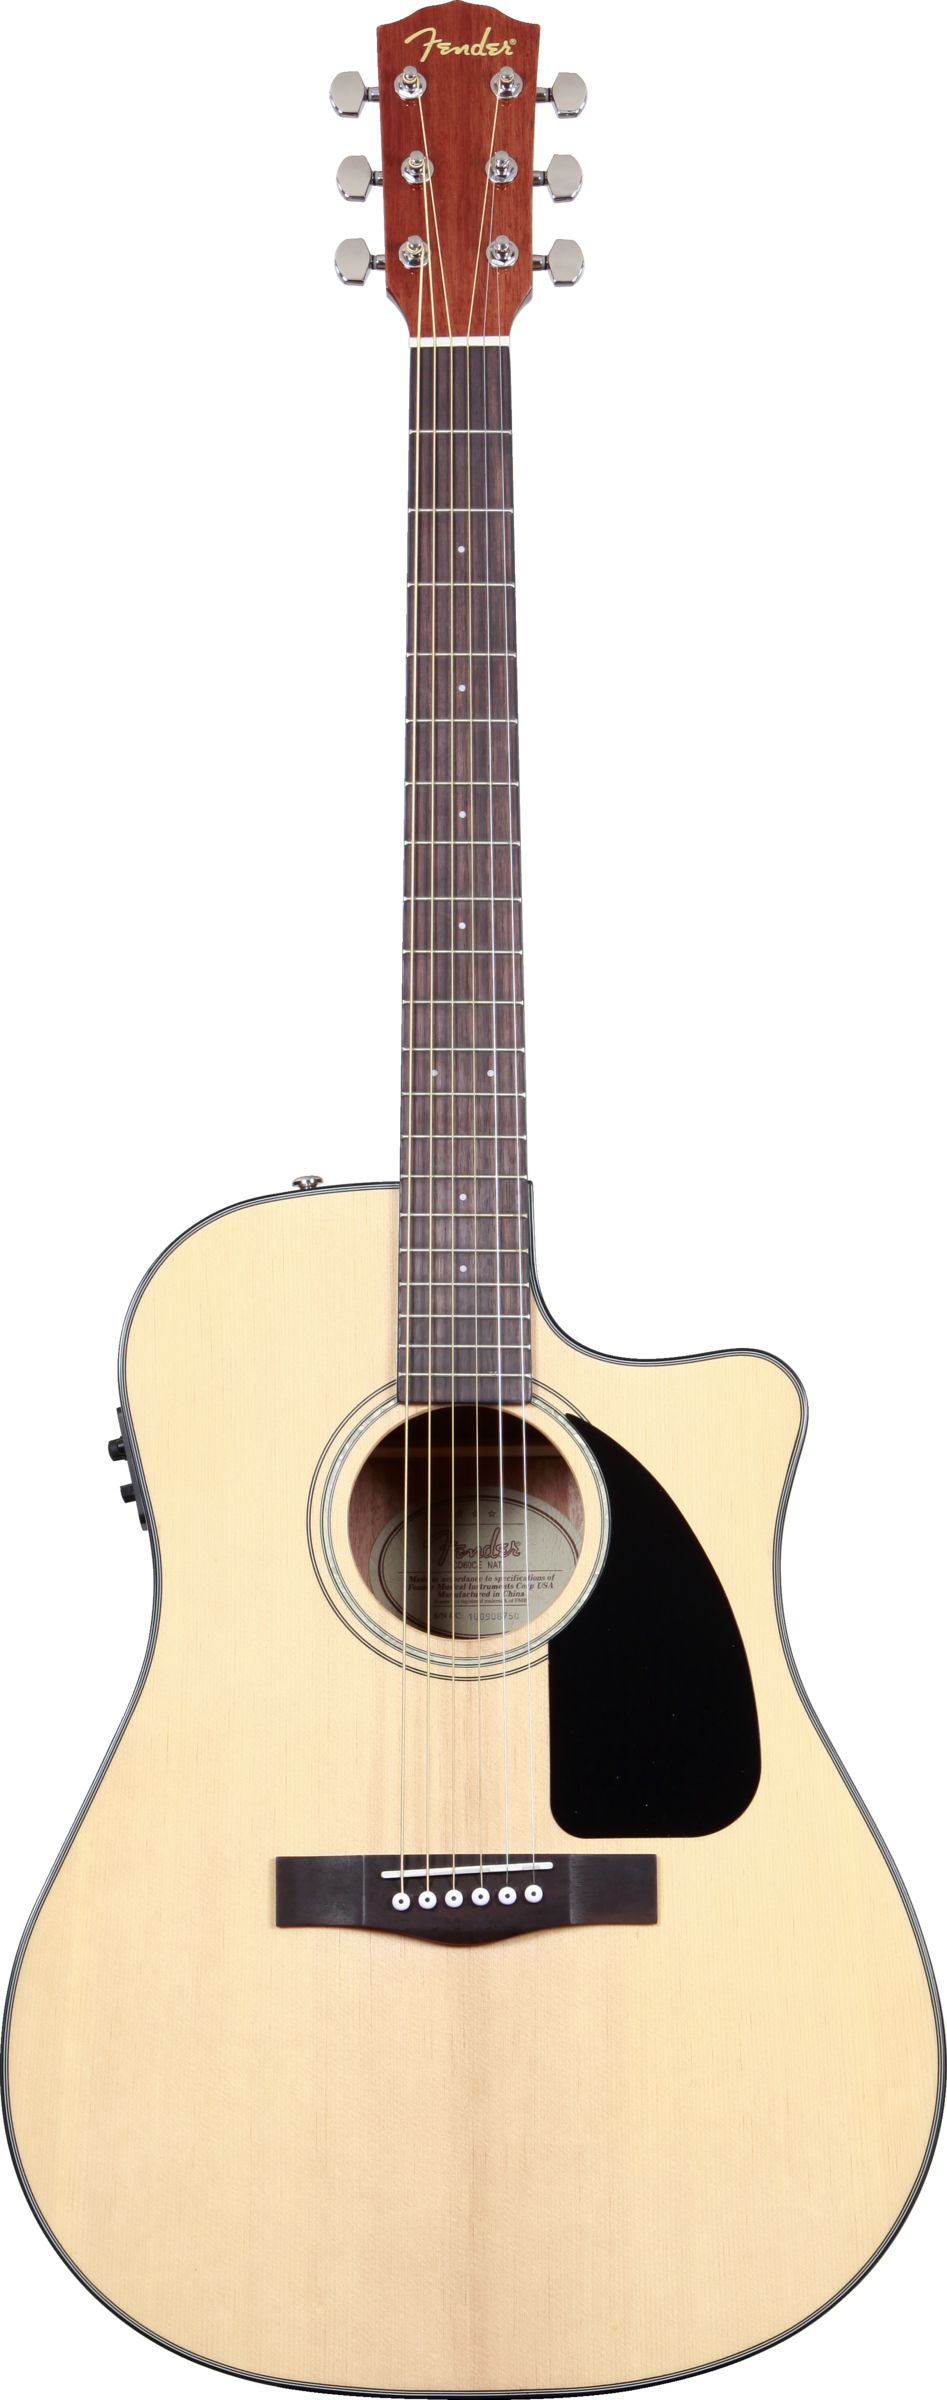 FENDER CC-60SCE NAT электроакустическая гитара, топ - массив ели, цвет натуральный